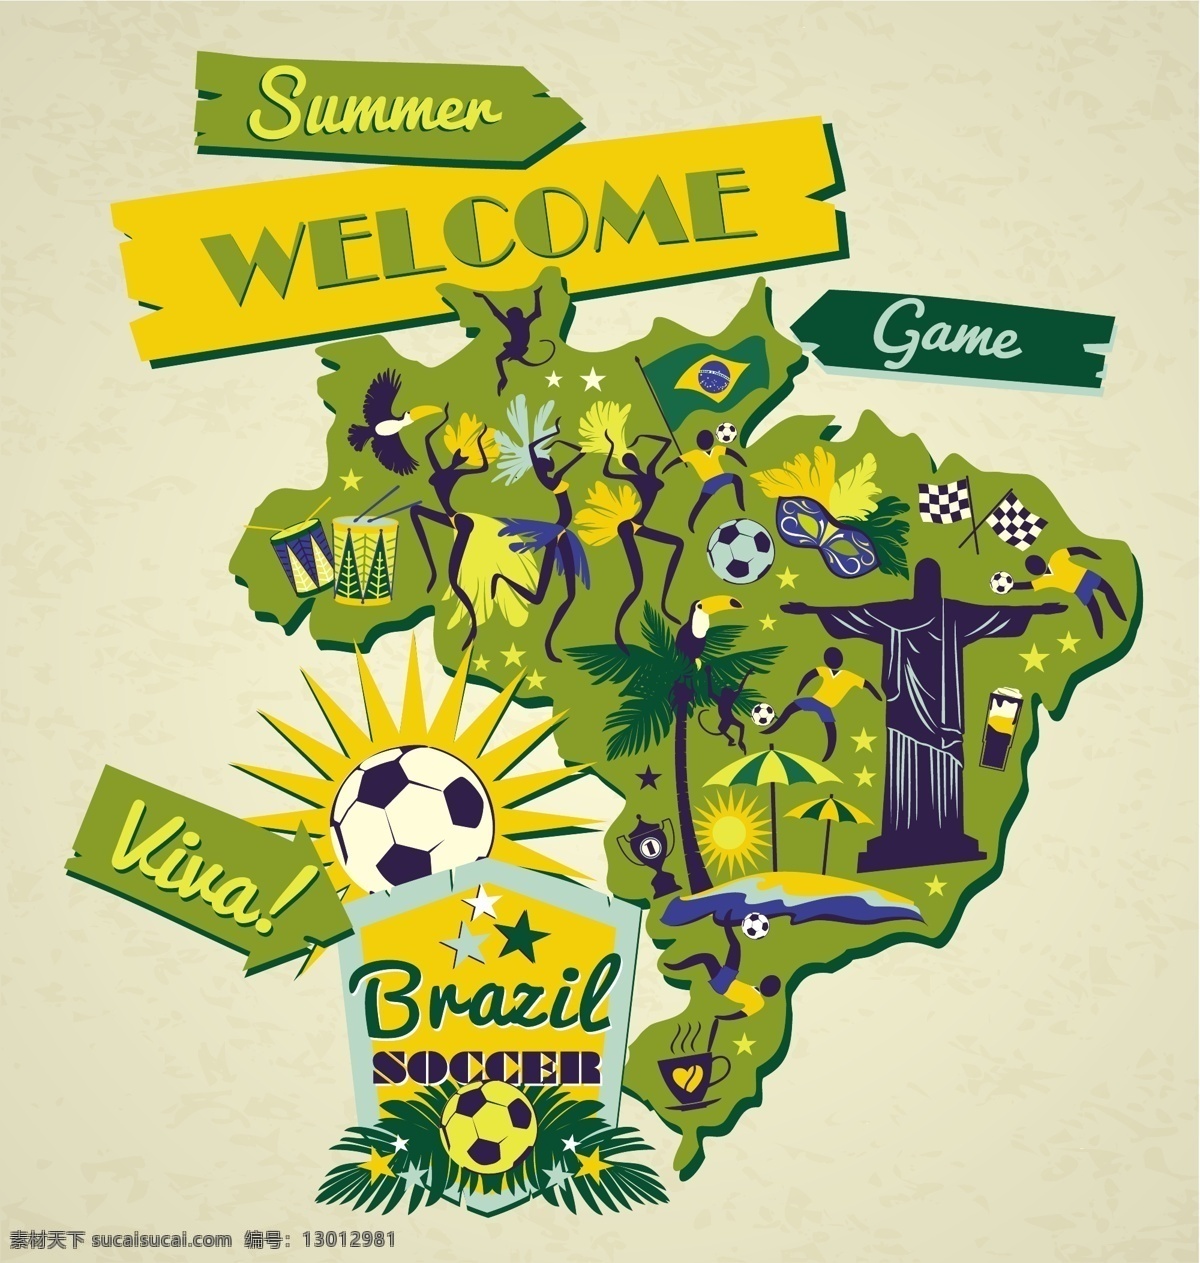 巴西 地图 标志 背景 模板下载 足球 椰子树 遮阳伞 耶稣 海报 世界杯 体育运动 生活百科 矢量素材 黄色